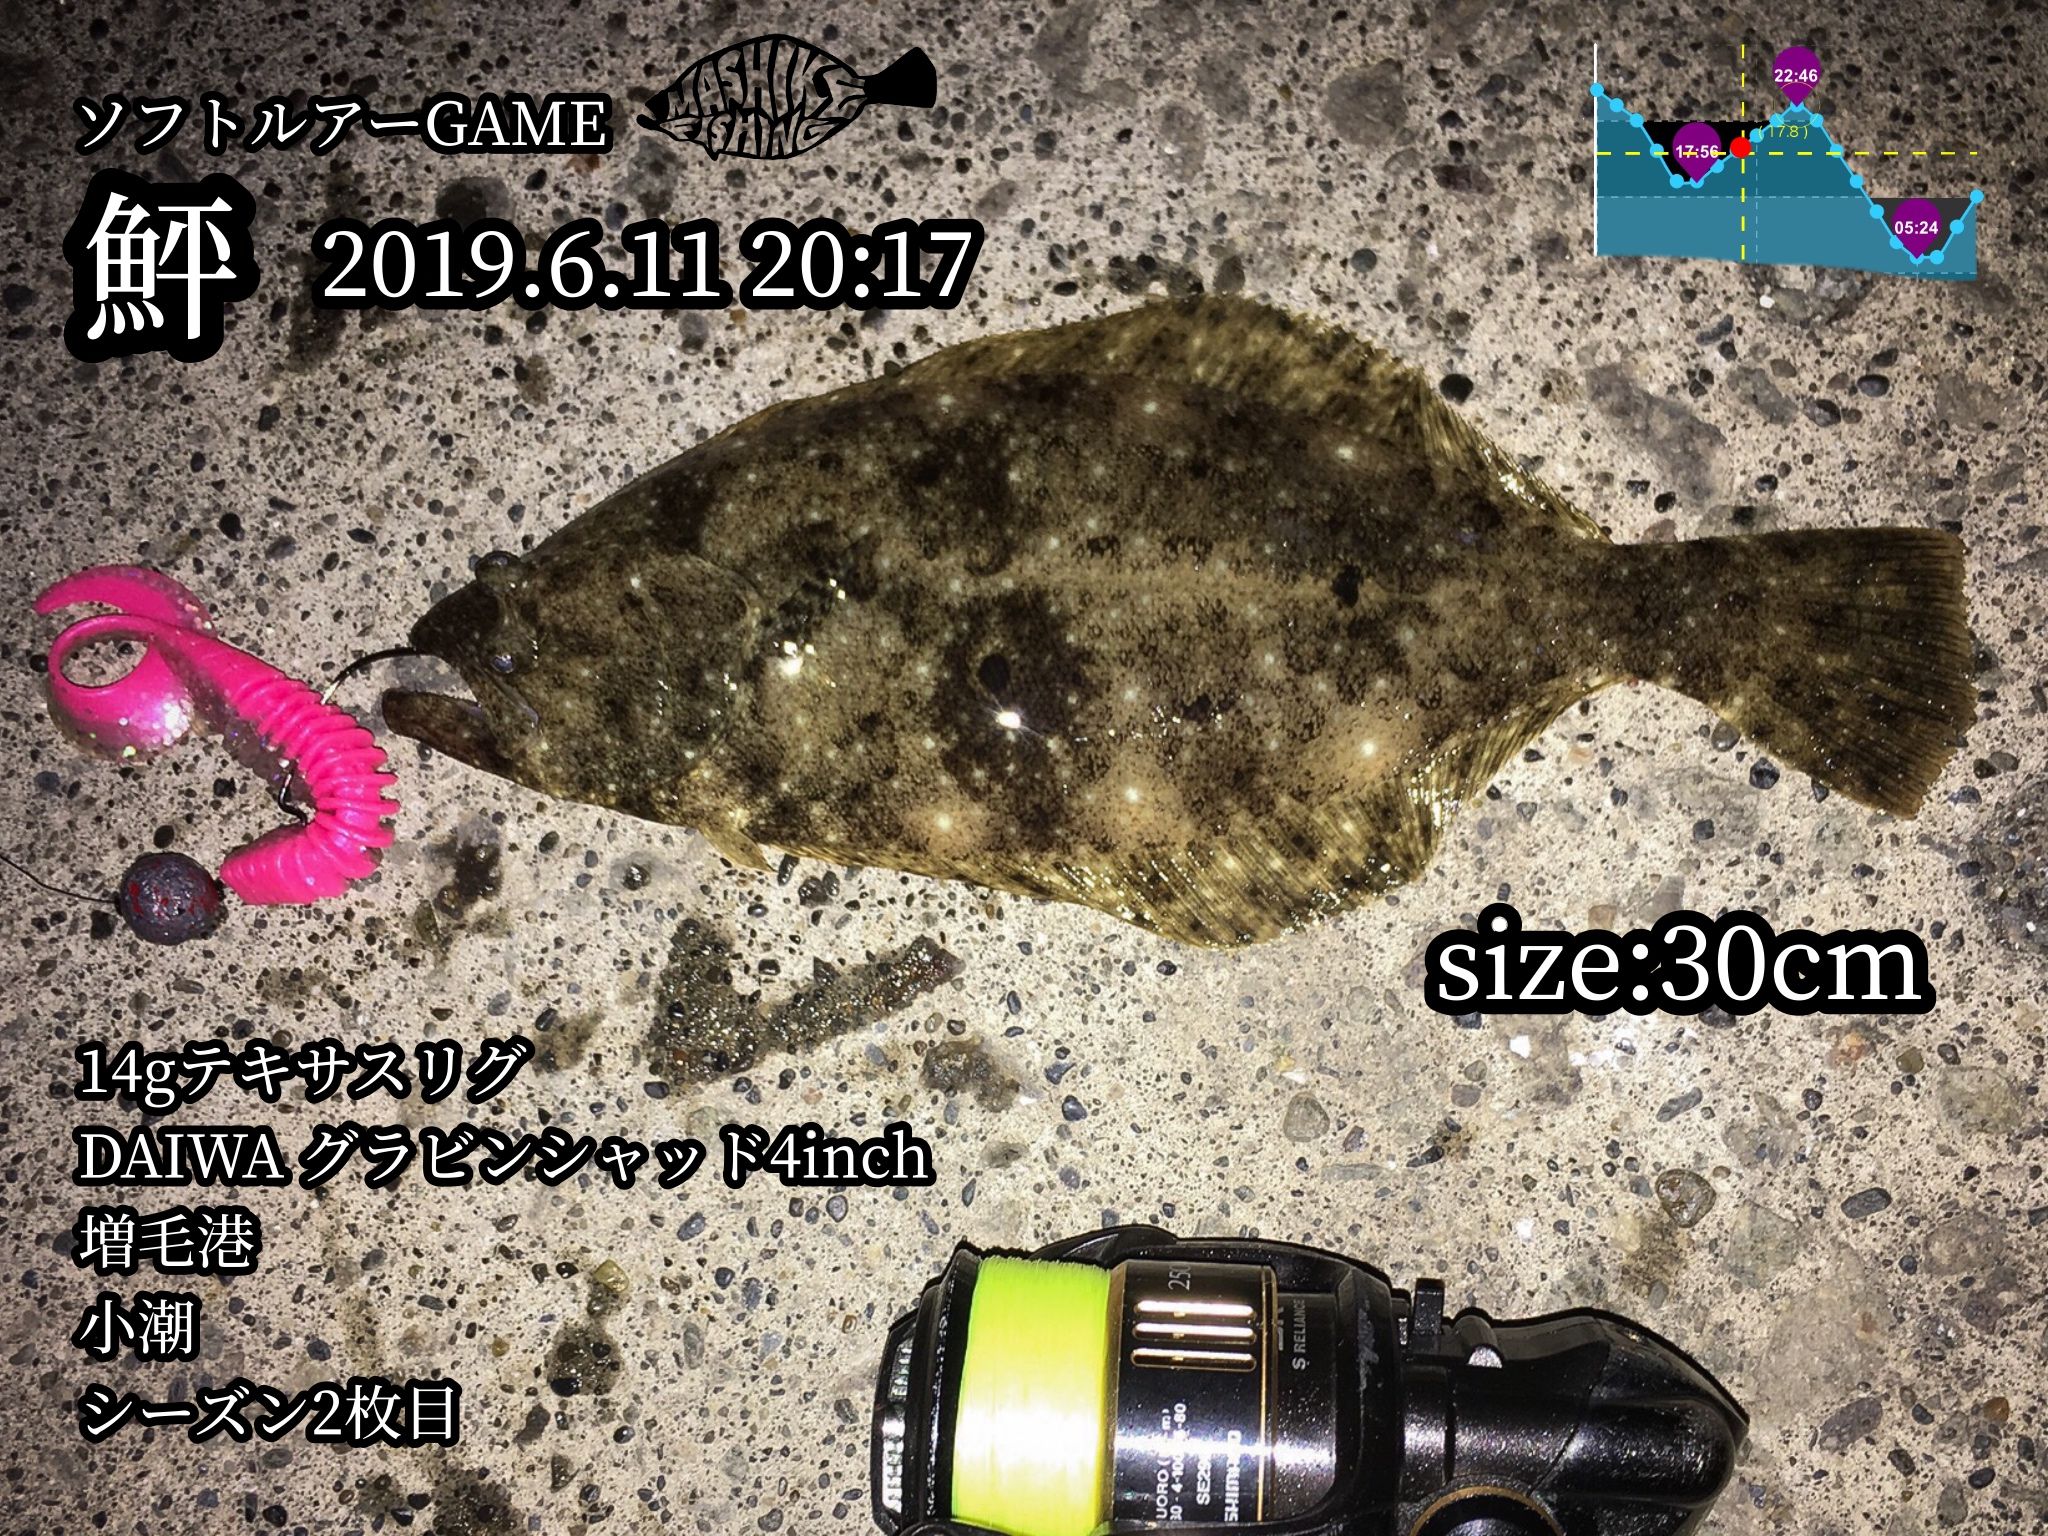 19 6 15 16 焼尻島遠征のはずが ヒラメ開幕 Mashike Fishing 楽天ブログ